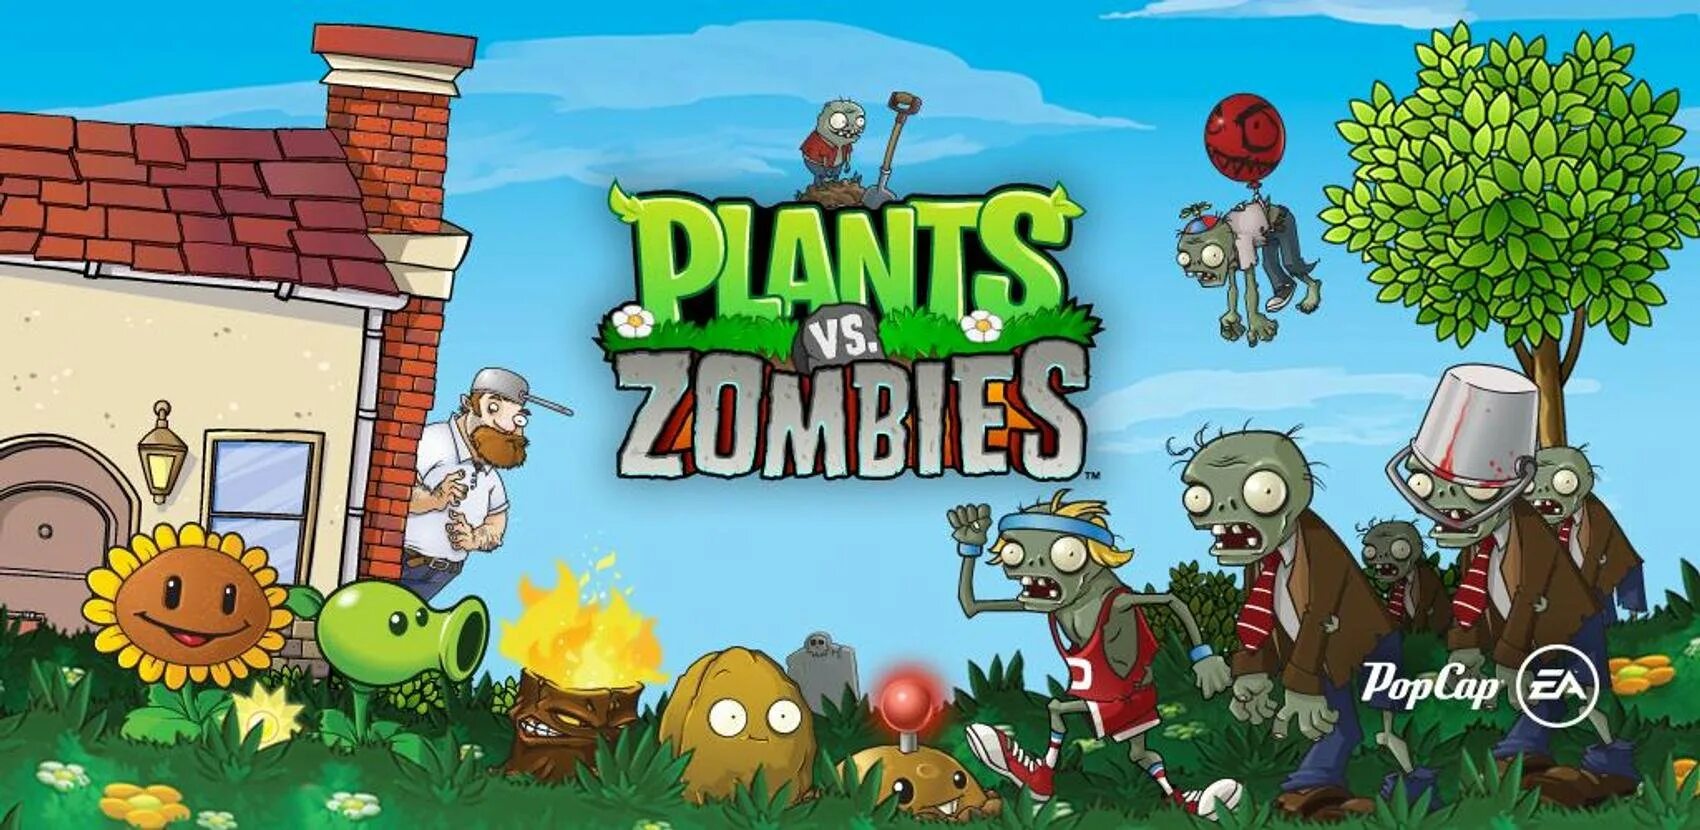 Plants vs zombie растение против зомби. Зомби растения против зомби 1 часть. Растения против зомби 2.9.07. Растение против зомби растения зомби. Растения против зомби 1 растения.